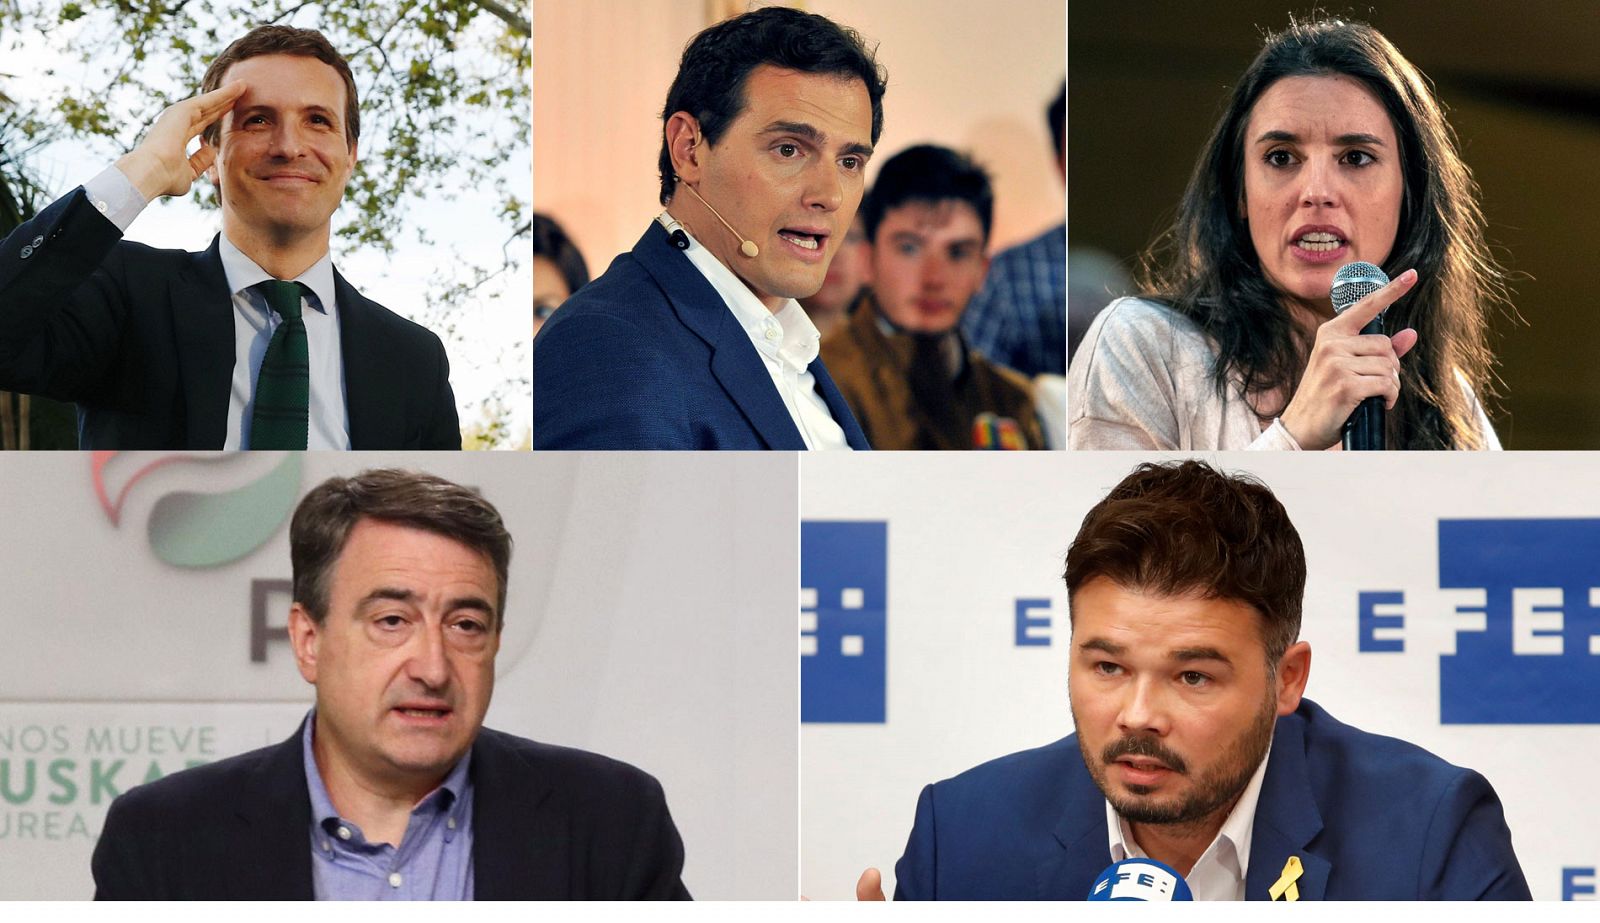 Elecciones generales 2019 | Los partidos políticos reaccionan a la oferta de un debate a cuatro en RTVE